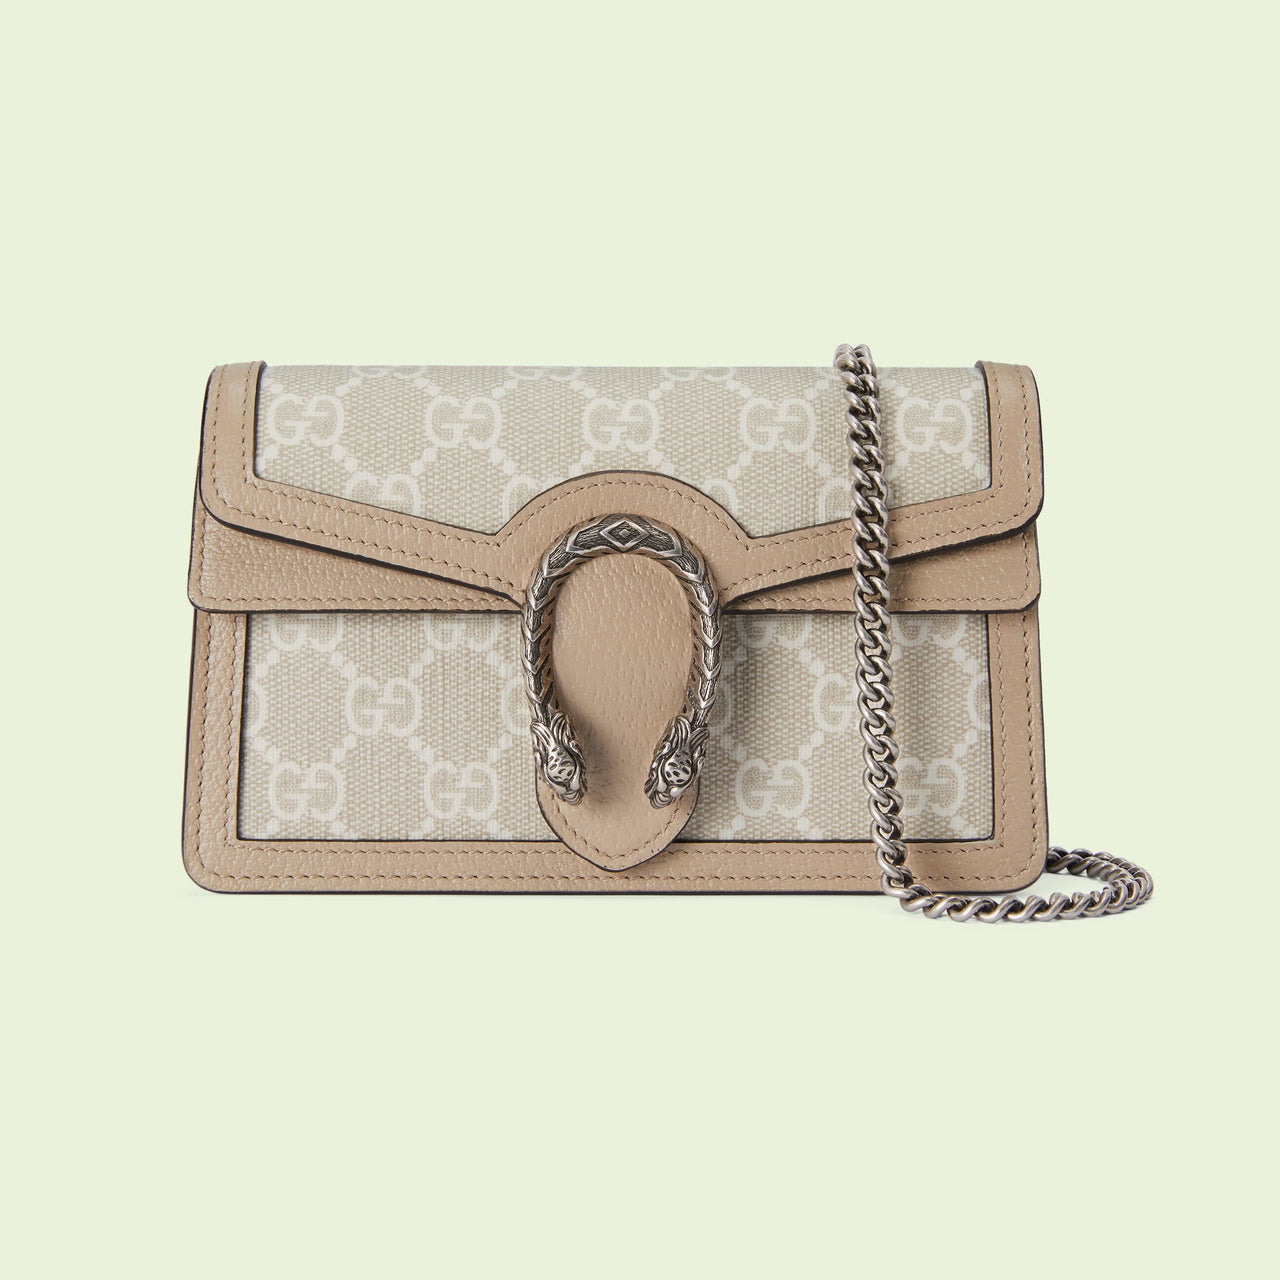 Gucci Dionysus GG Super Mini Bag (Beige & White)